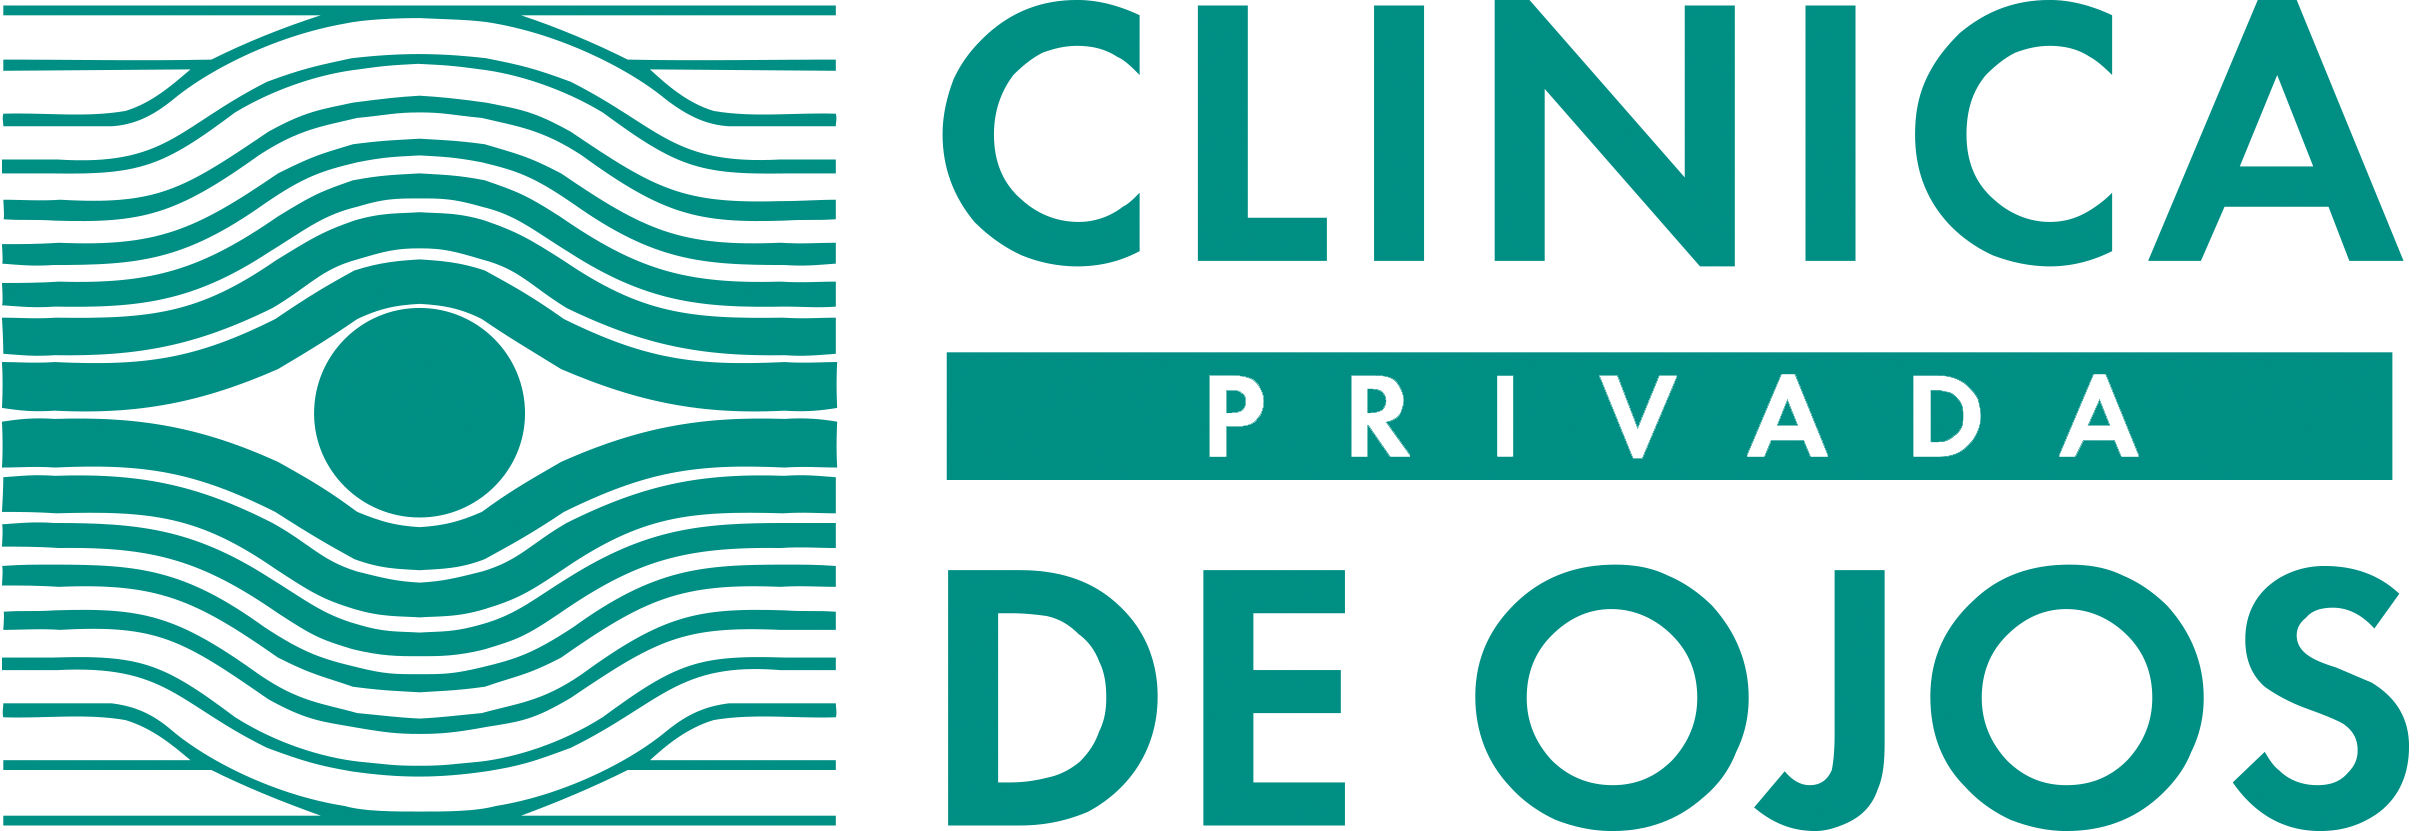 Clinica Privada de Ojos logo